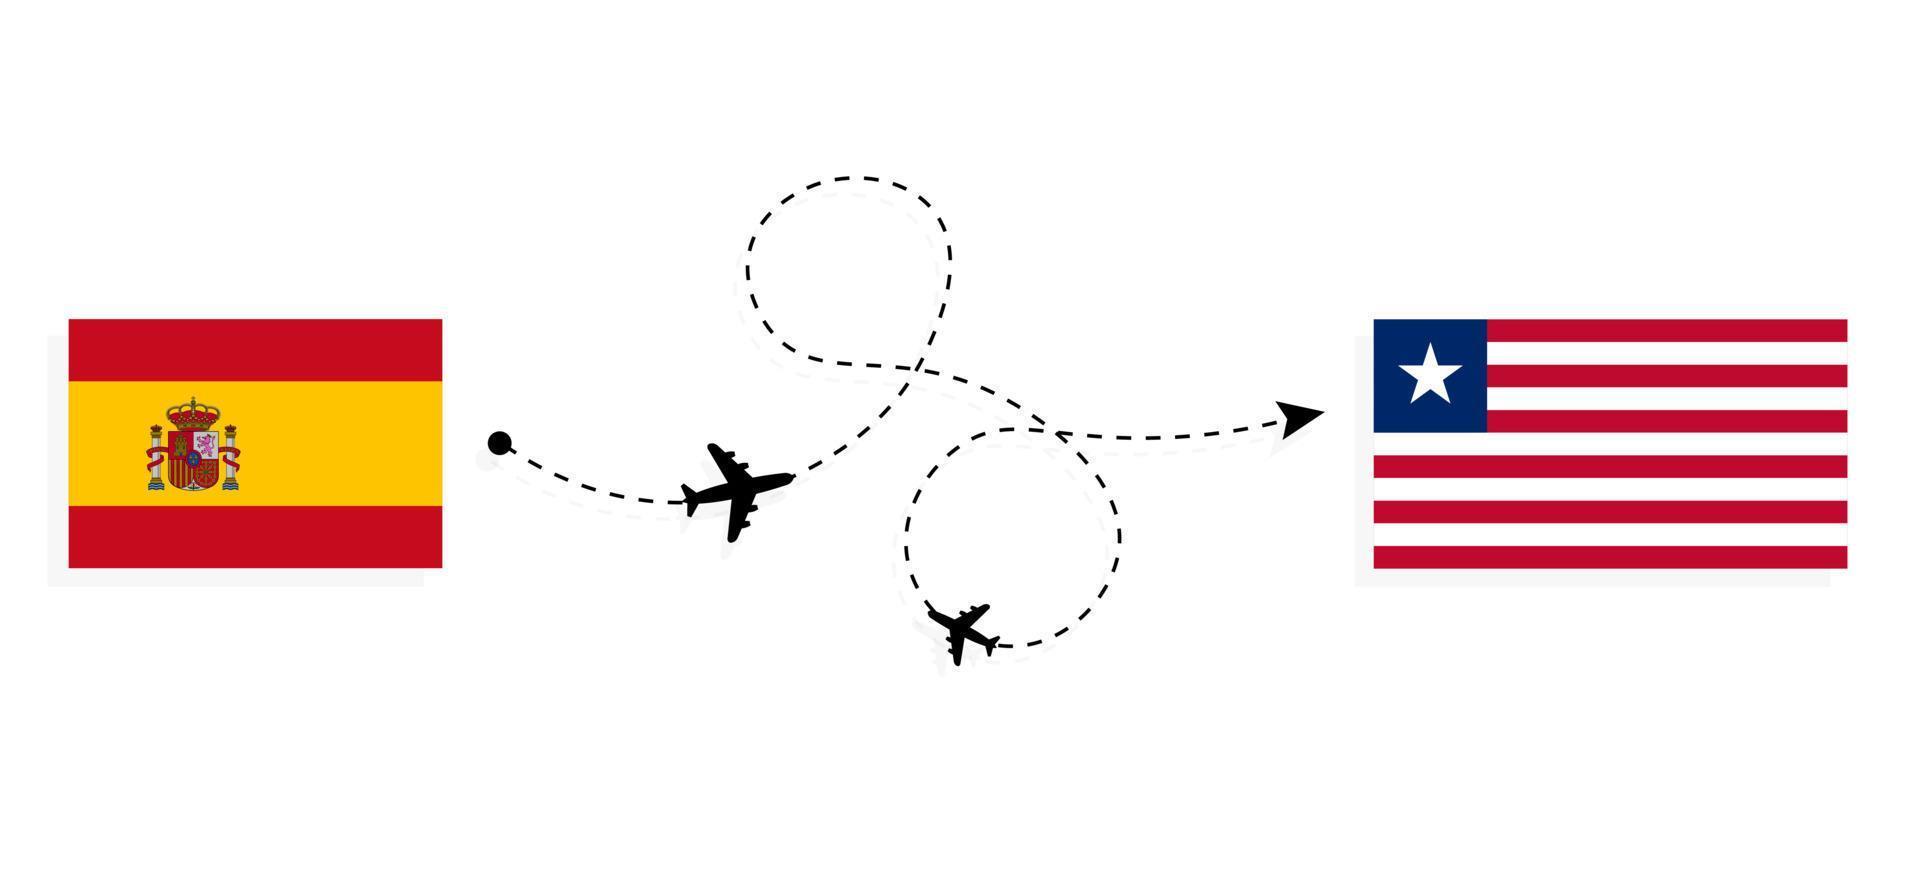 flyg och resor från Spanien till Liberia med passagerarflygplan vektor